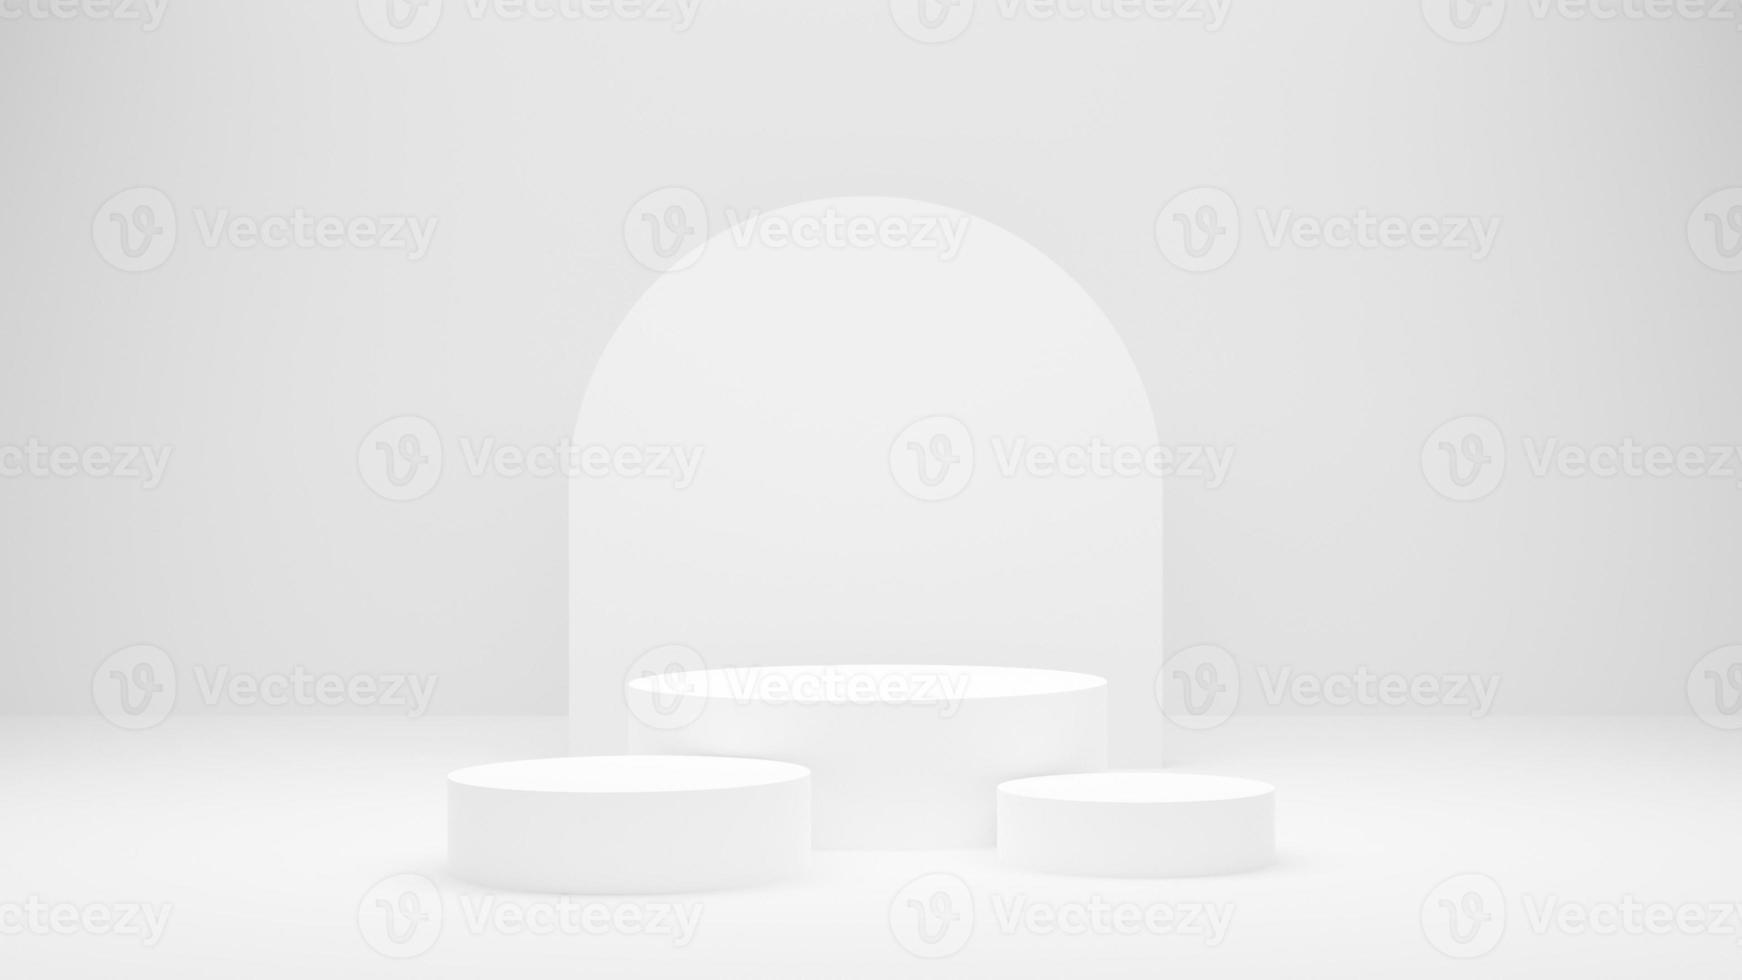 pódio branco ou plataforma de círculo branco na iluminação brilhante do estúdio, conceito de mínimo e limpo para colocar produtos, imagem de renderização 3d. foto